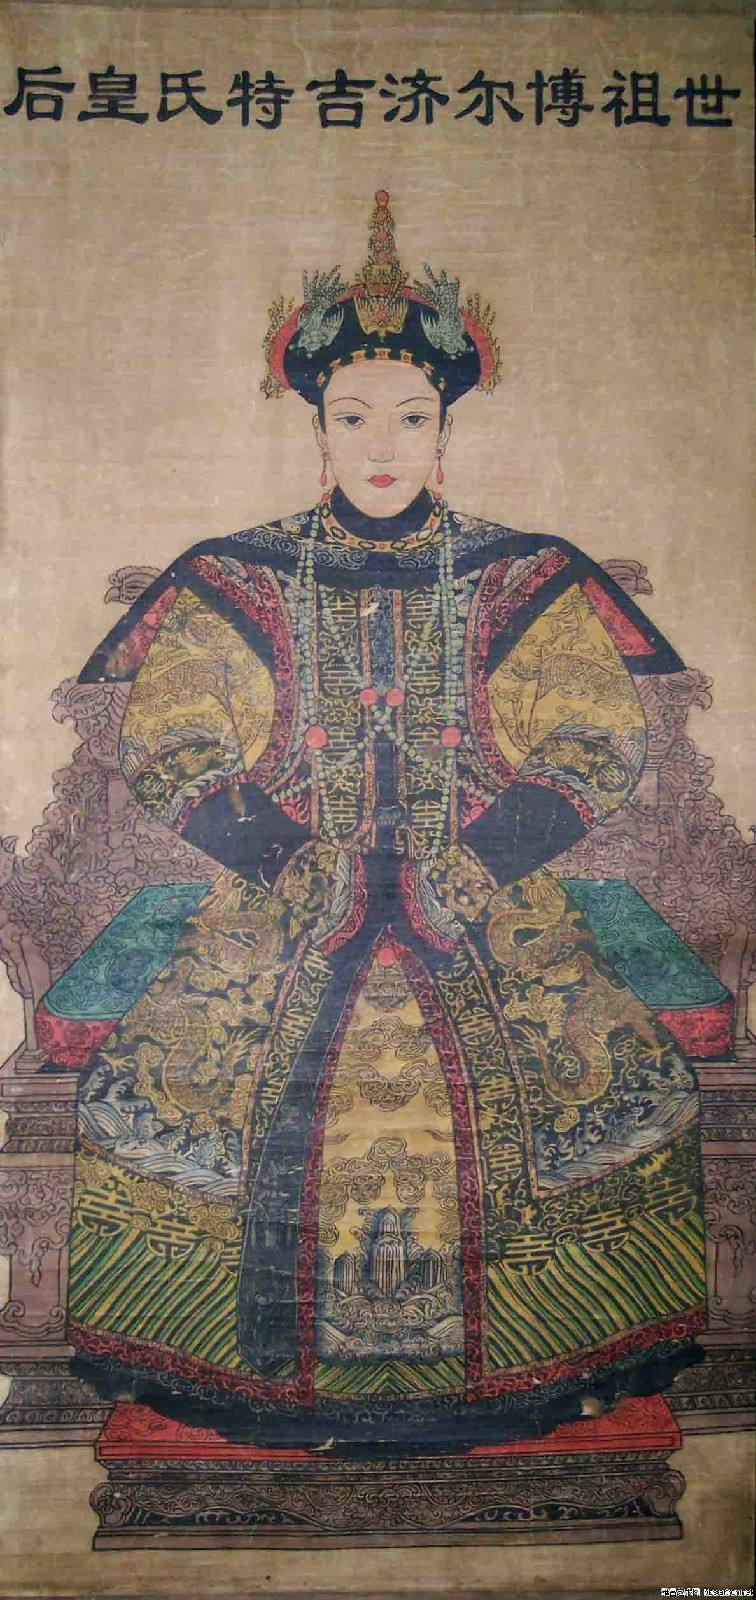 将她降为静妃,至此,博尔济吉特氏不但成为了清朝历史上第一位废后,也